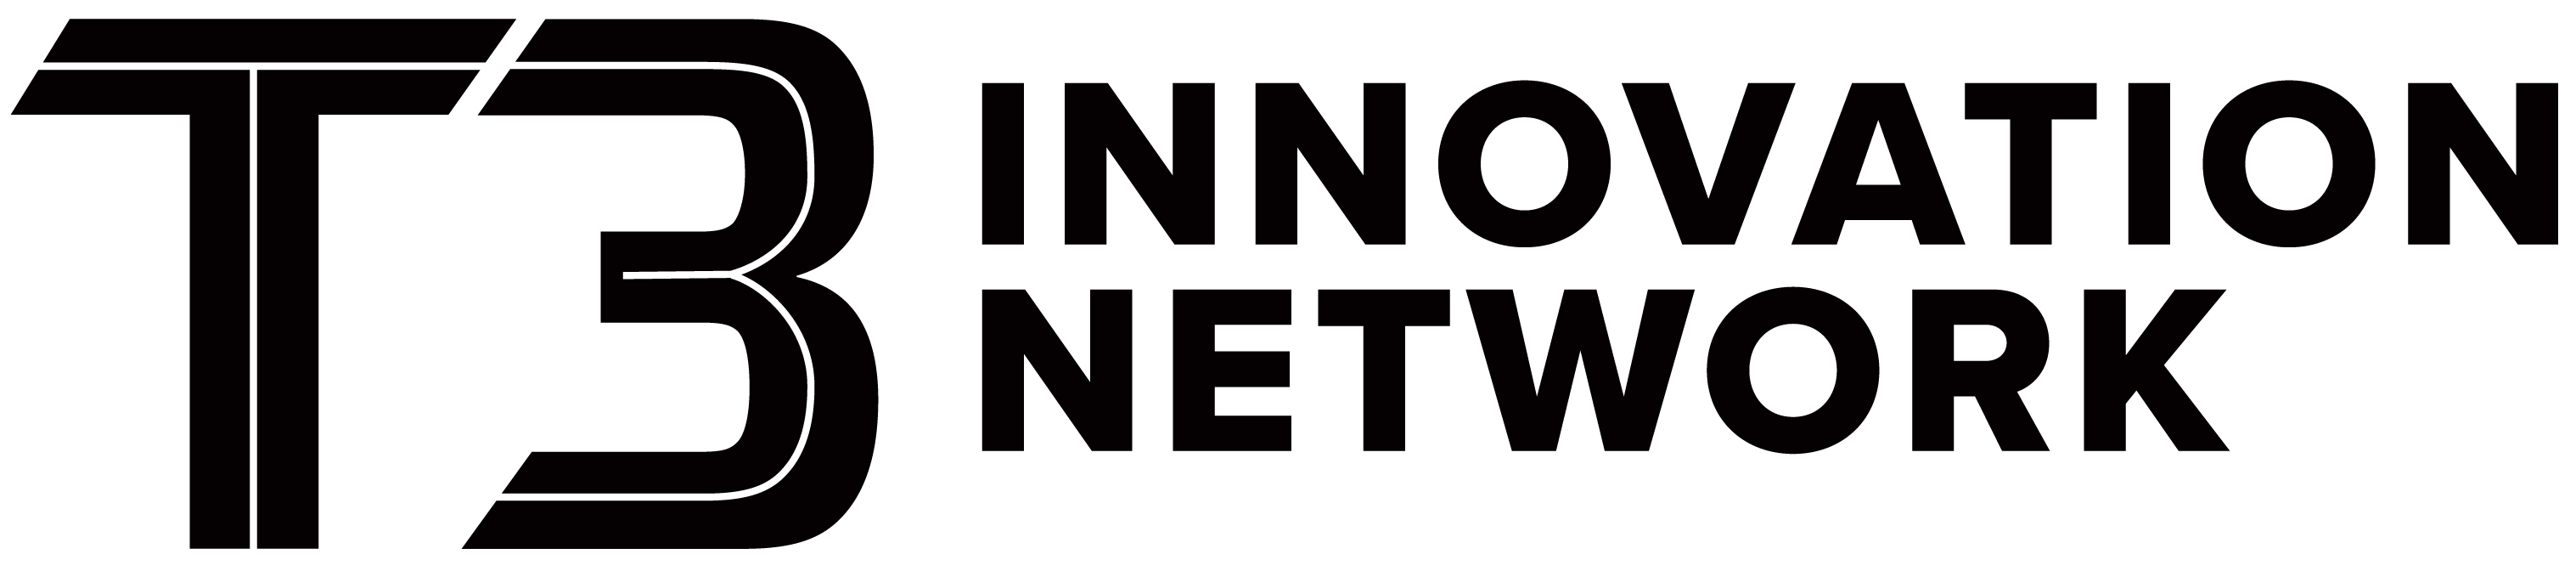 T3 Innovation Network Logo